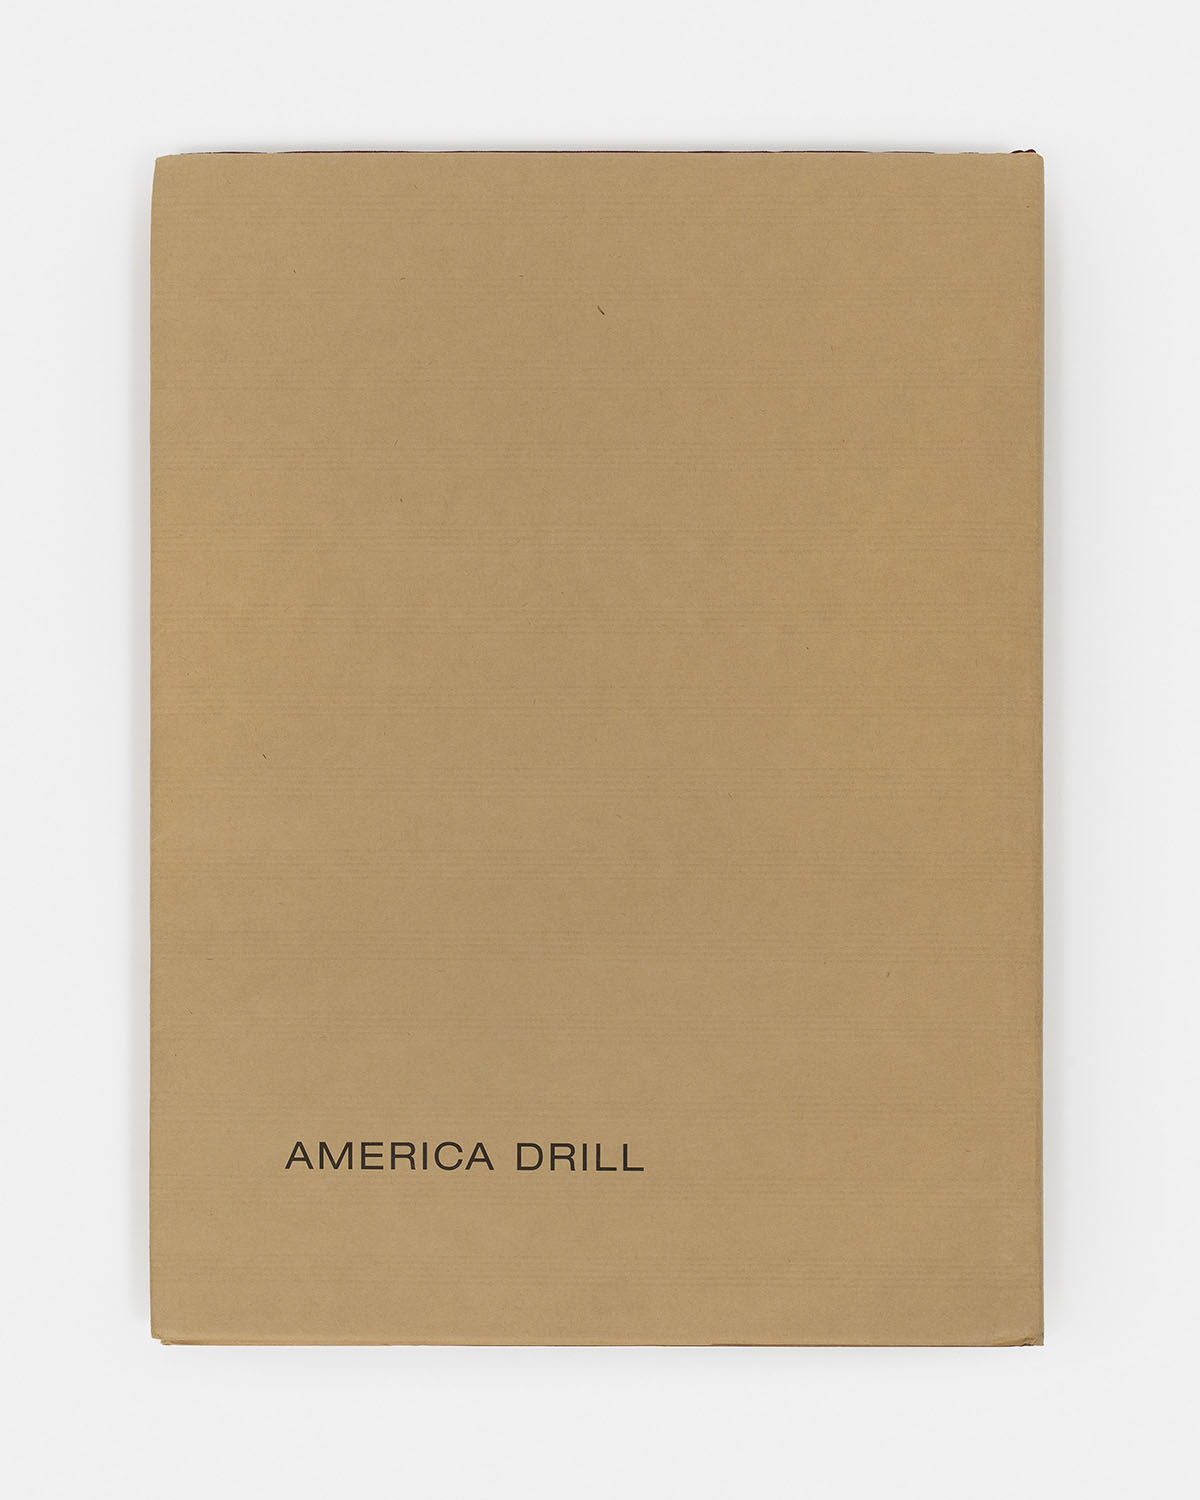 Carl Andre - America Drill, 1963/2003 - 